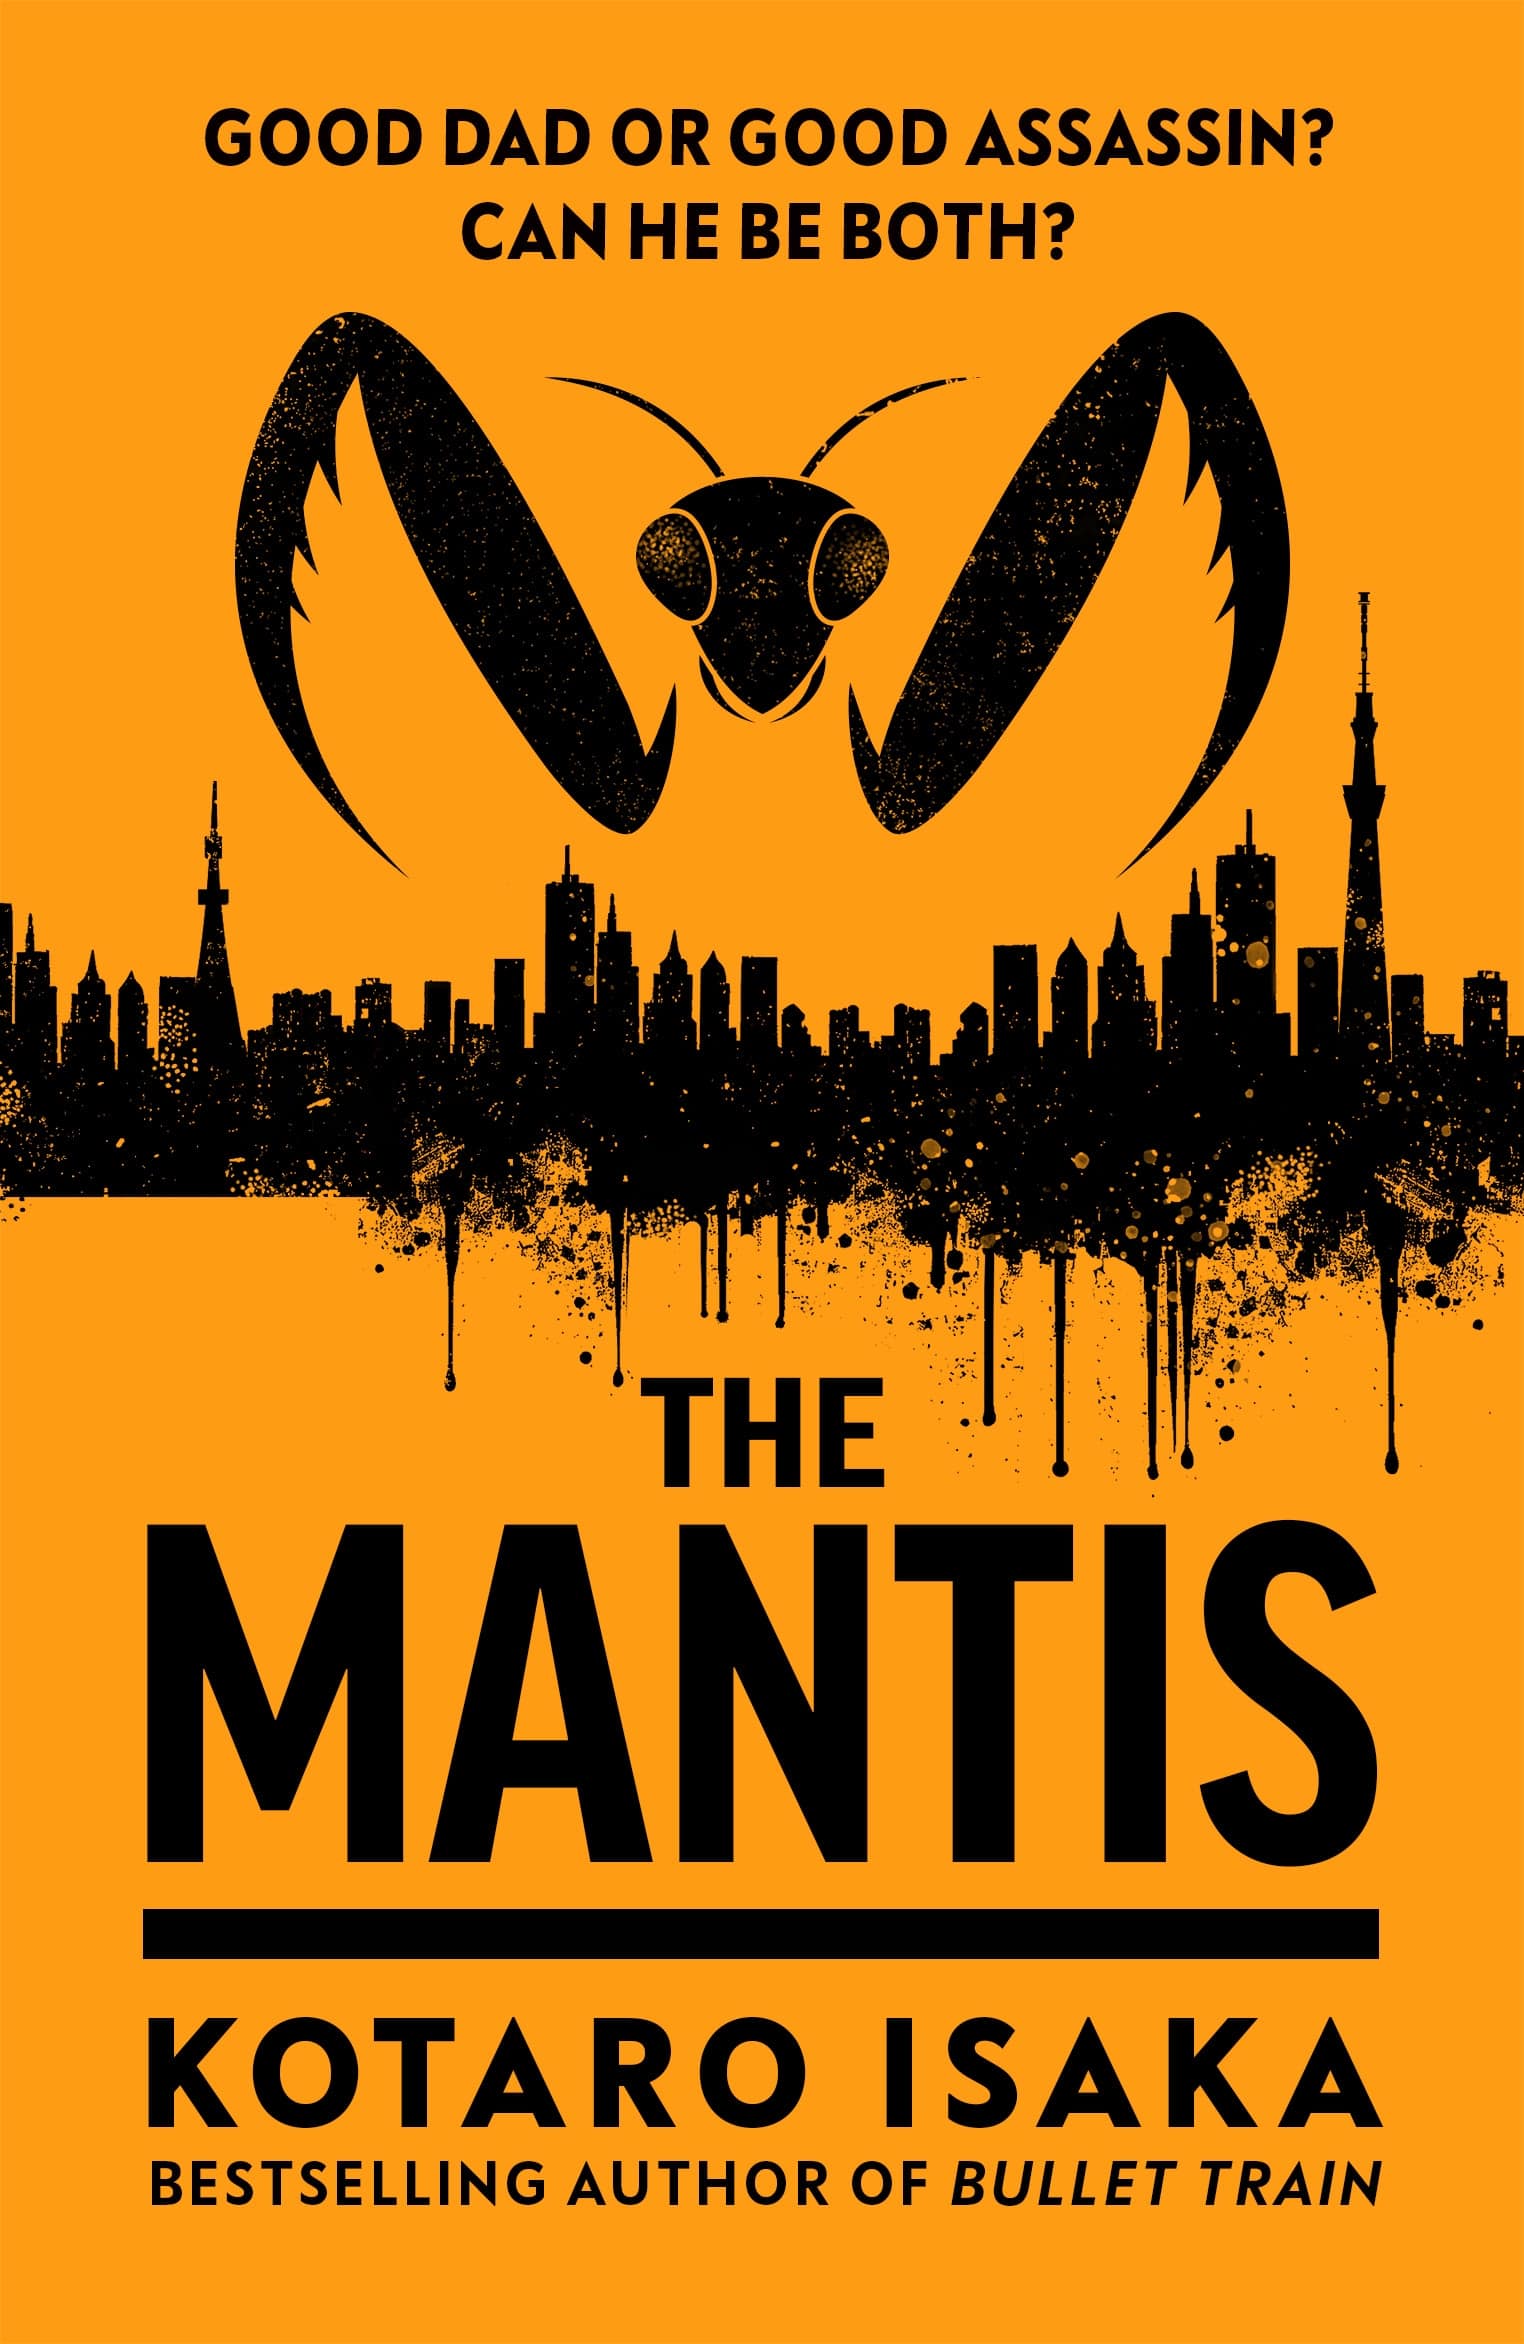 The Mantis by Kotoro Isaka book cover